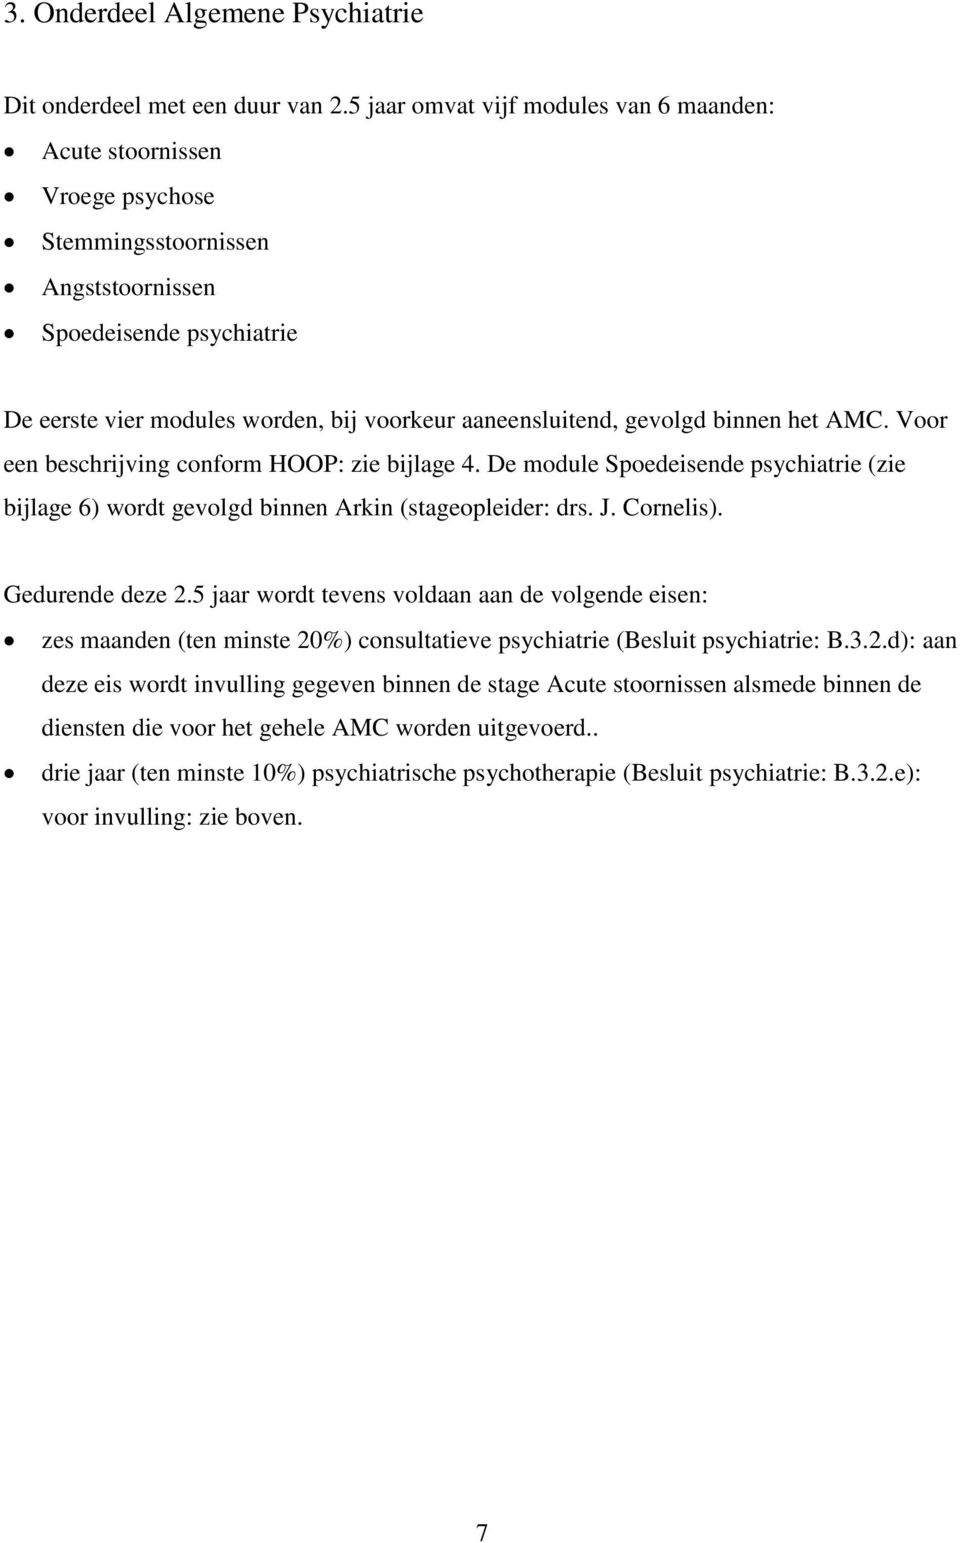 gevolgd binnen het AMC. Voor een beschrijving conform HOOP: zie bijlage 4. De module Spoedeisende psychiatrie (zie bijlage 6) wordt gevolgd binnen Arkin (stageopleider: drs. J. Cornelis).